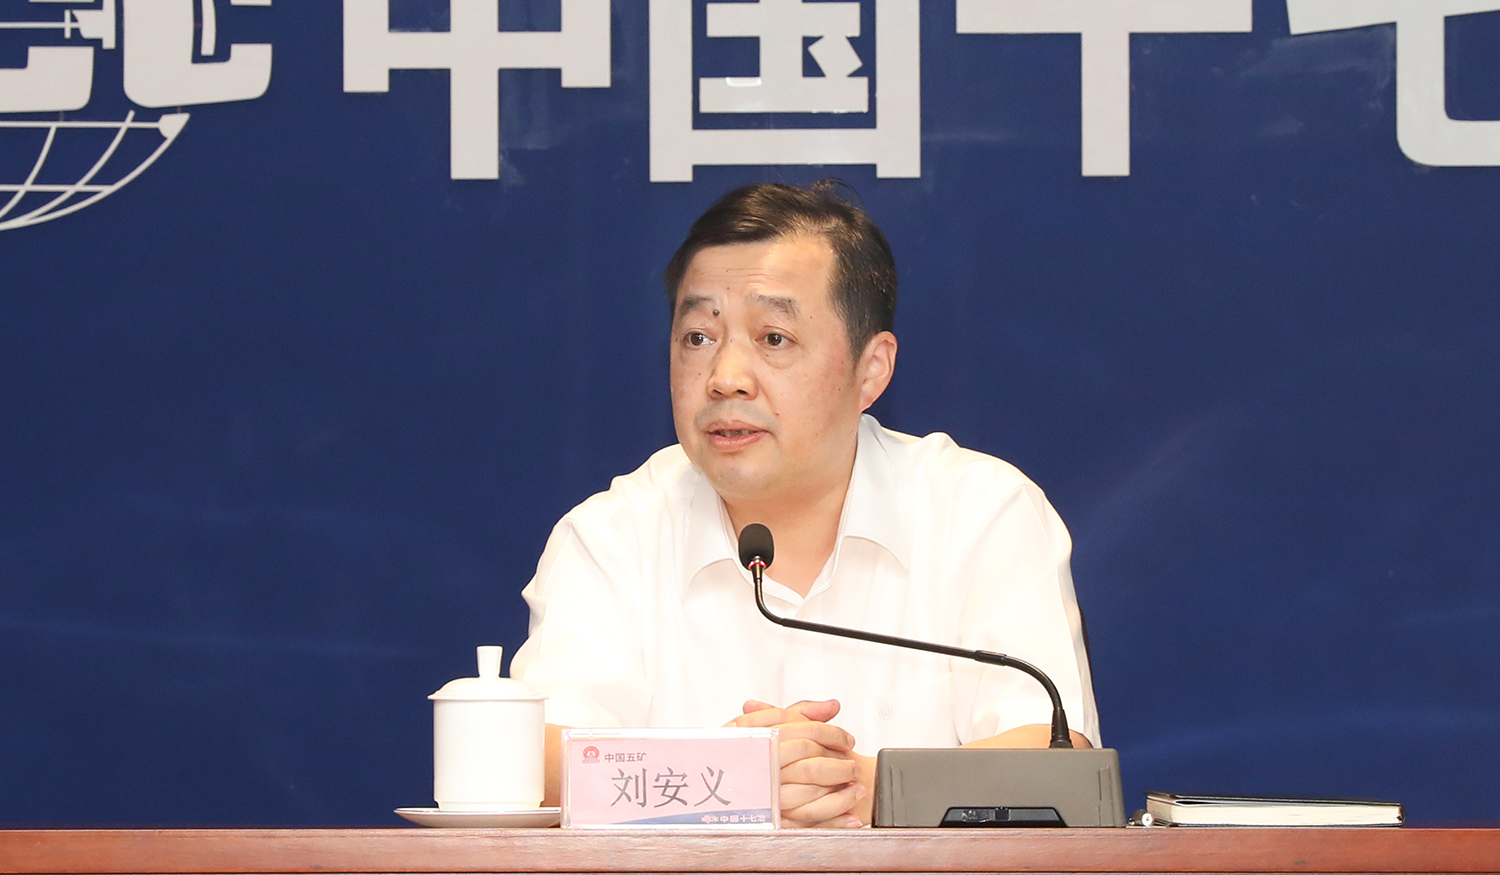 会议最后,中国十七冶集团总经理,党委副书记刘安义强调,项目管控平台